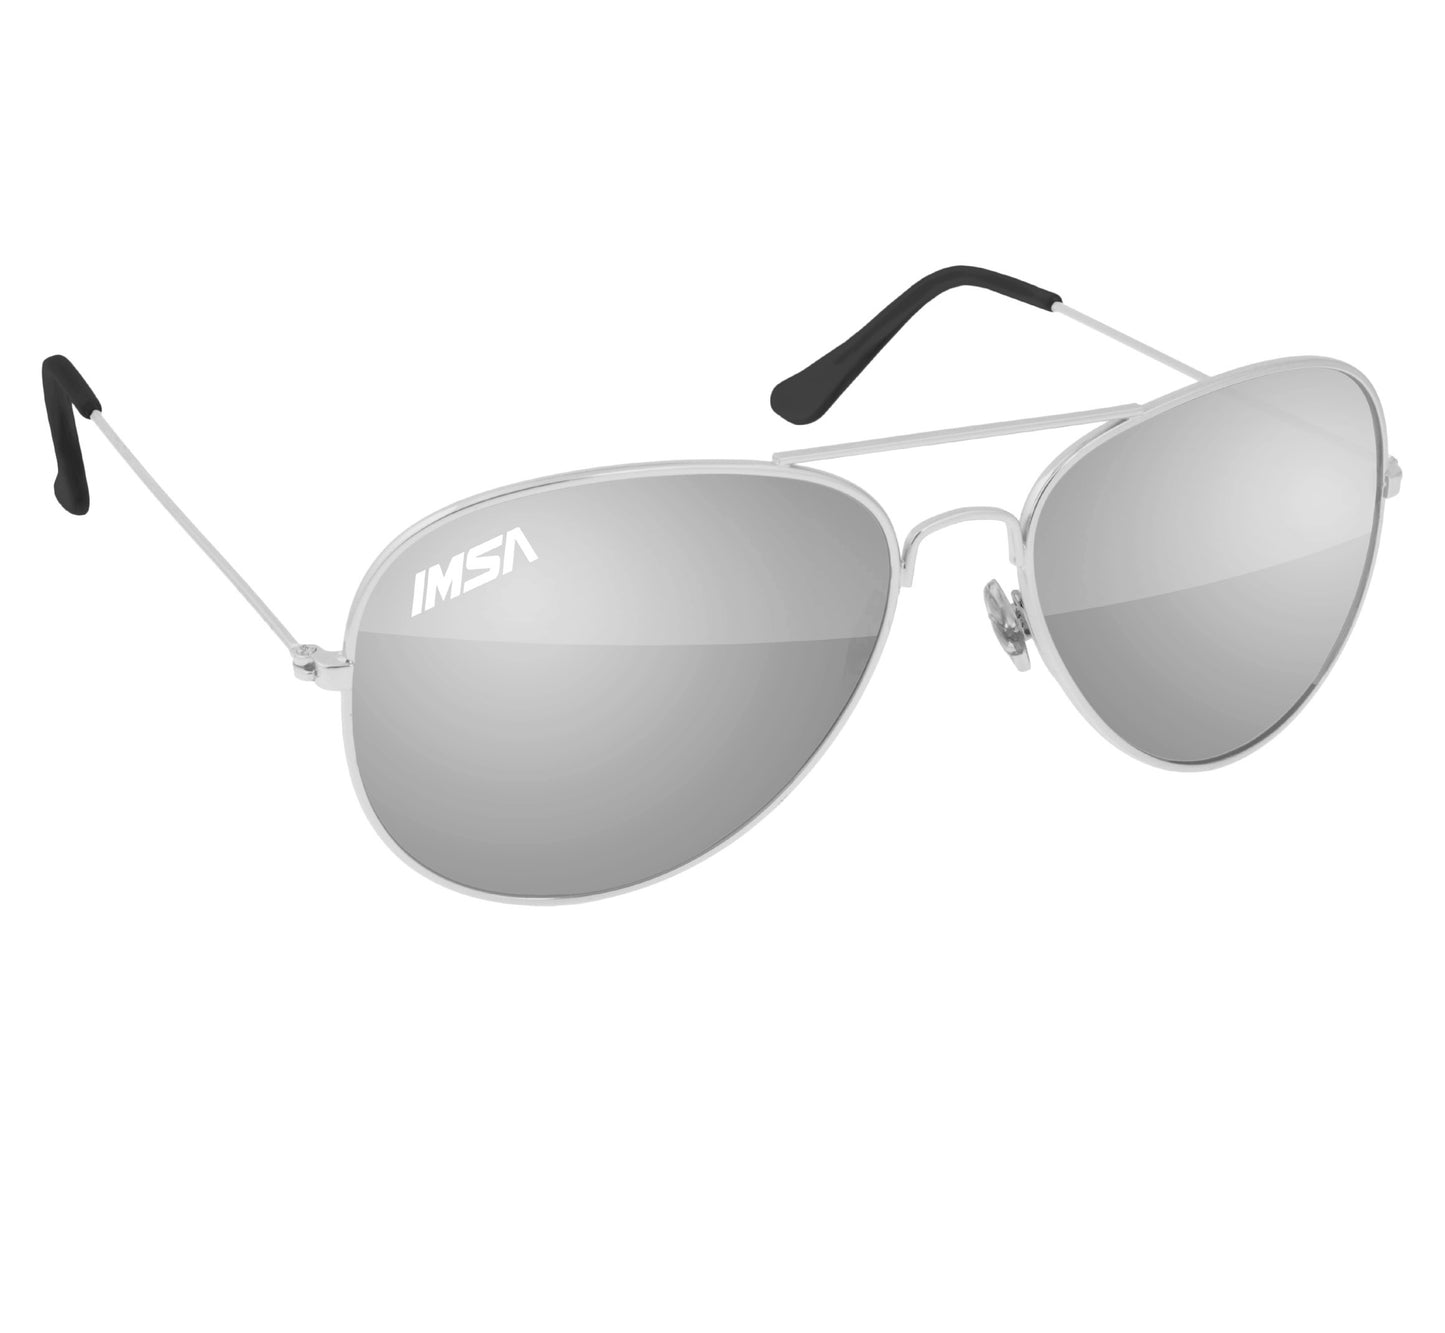 IMSA Aviator Sunglasses Silver/Black